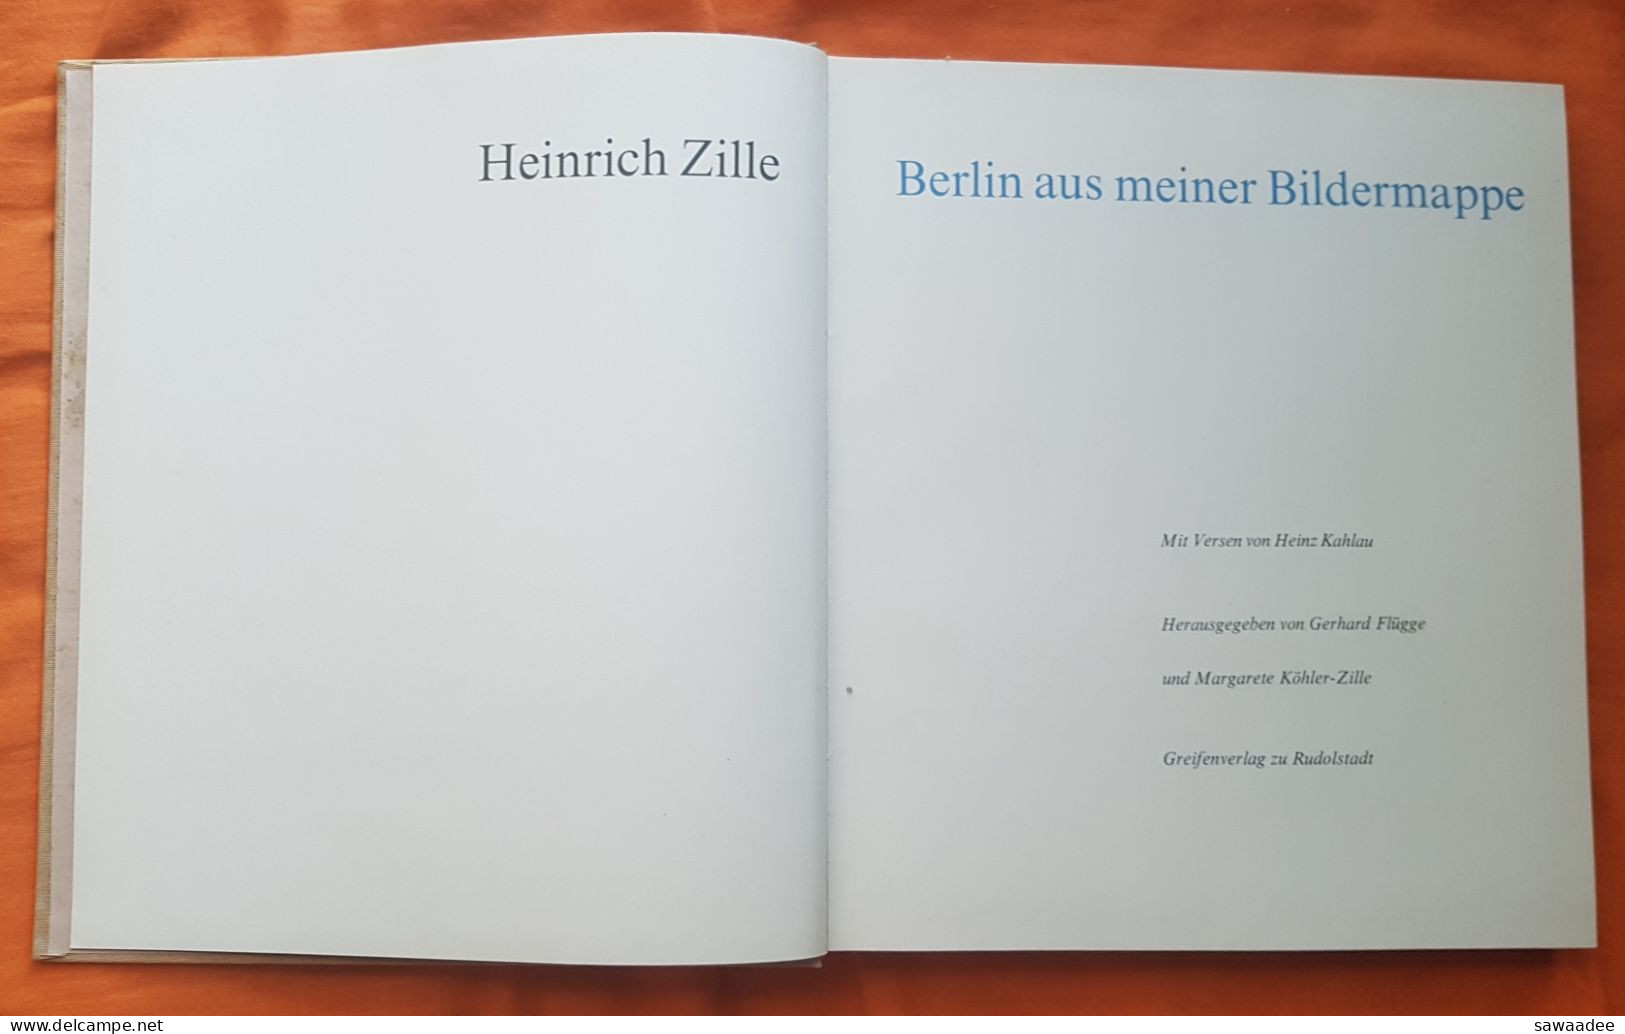 LIVRE D'ART - PEINTRE - HEINRICH ZILLE - BERLIN AUS MEINER BILDERMAPPE - BIOGRAPHIE - 1972 - DESSINS ET PEINTURES